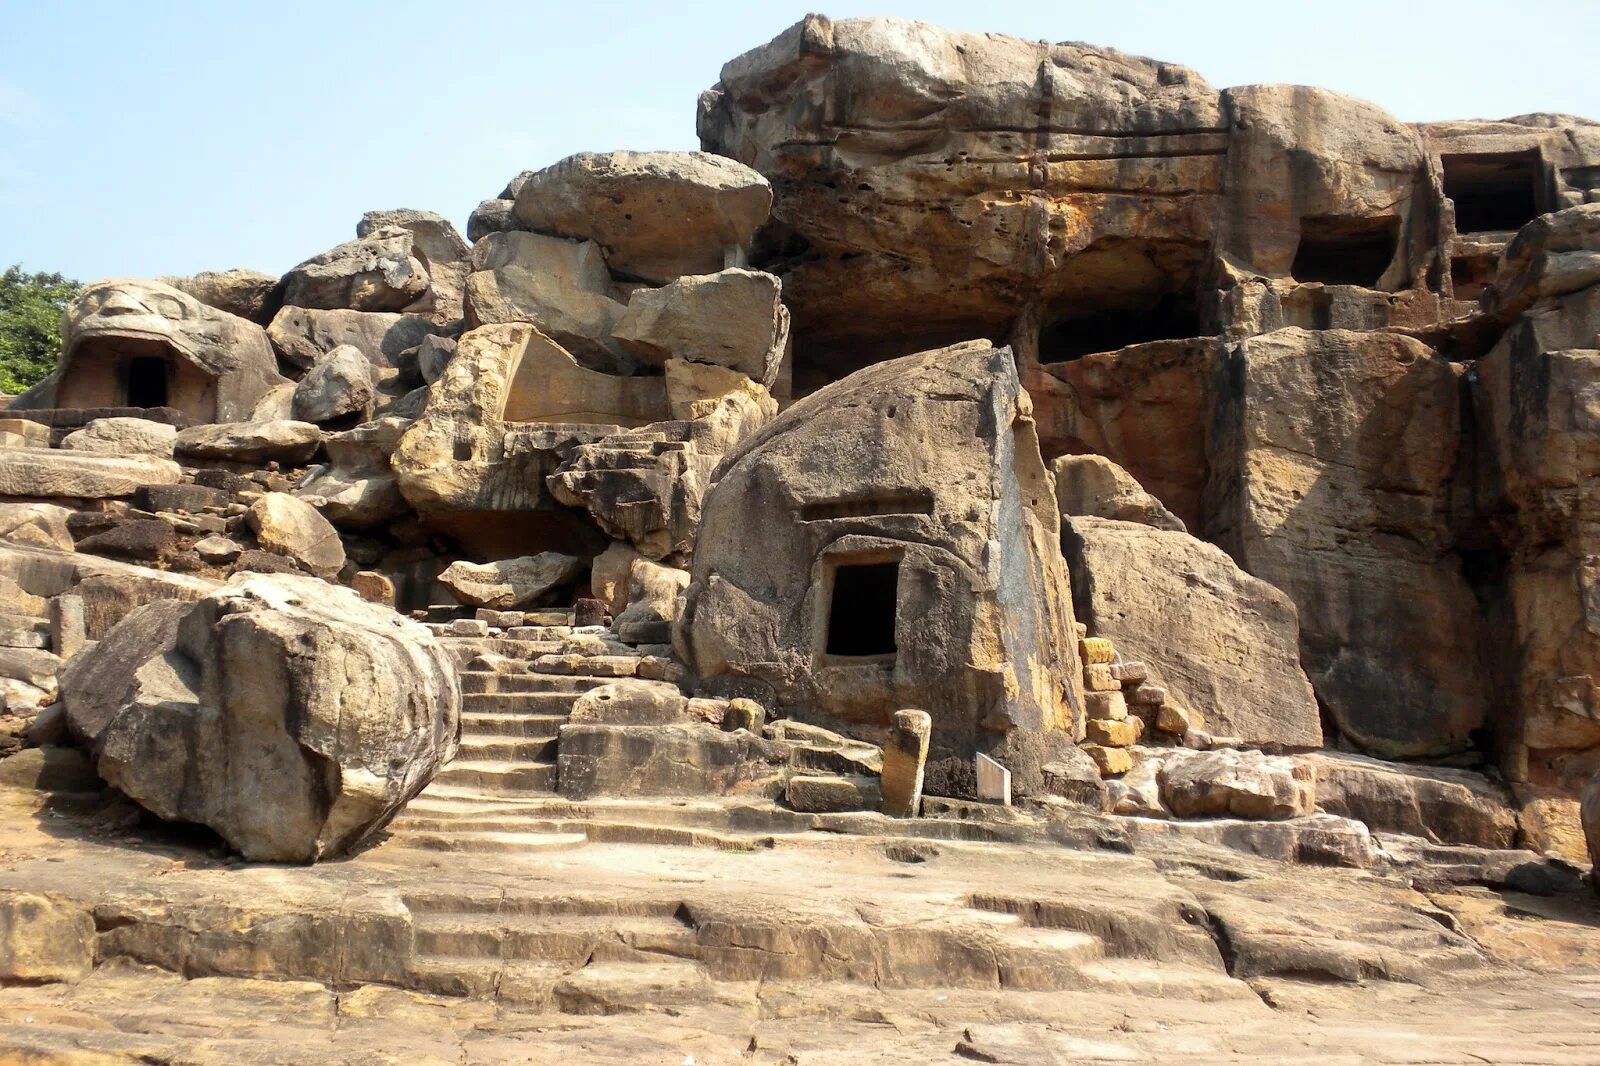 Udayagiri and Khandagiri Caves. Пещерные храмы Удаягири. Mother natures cave